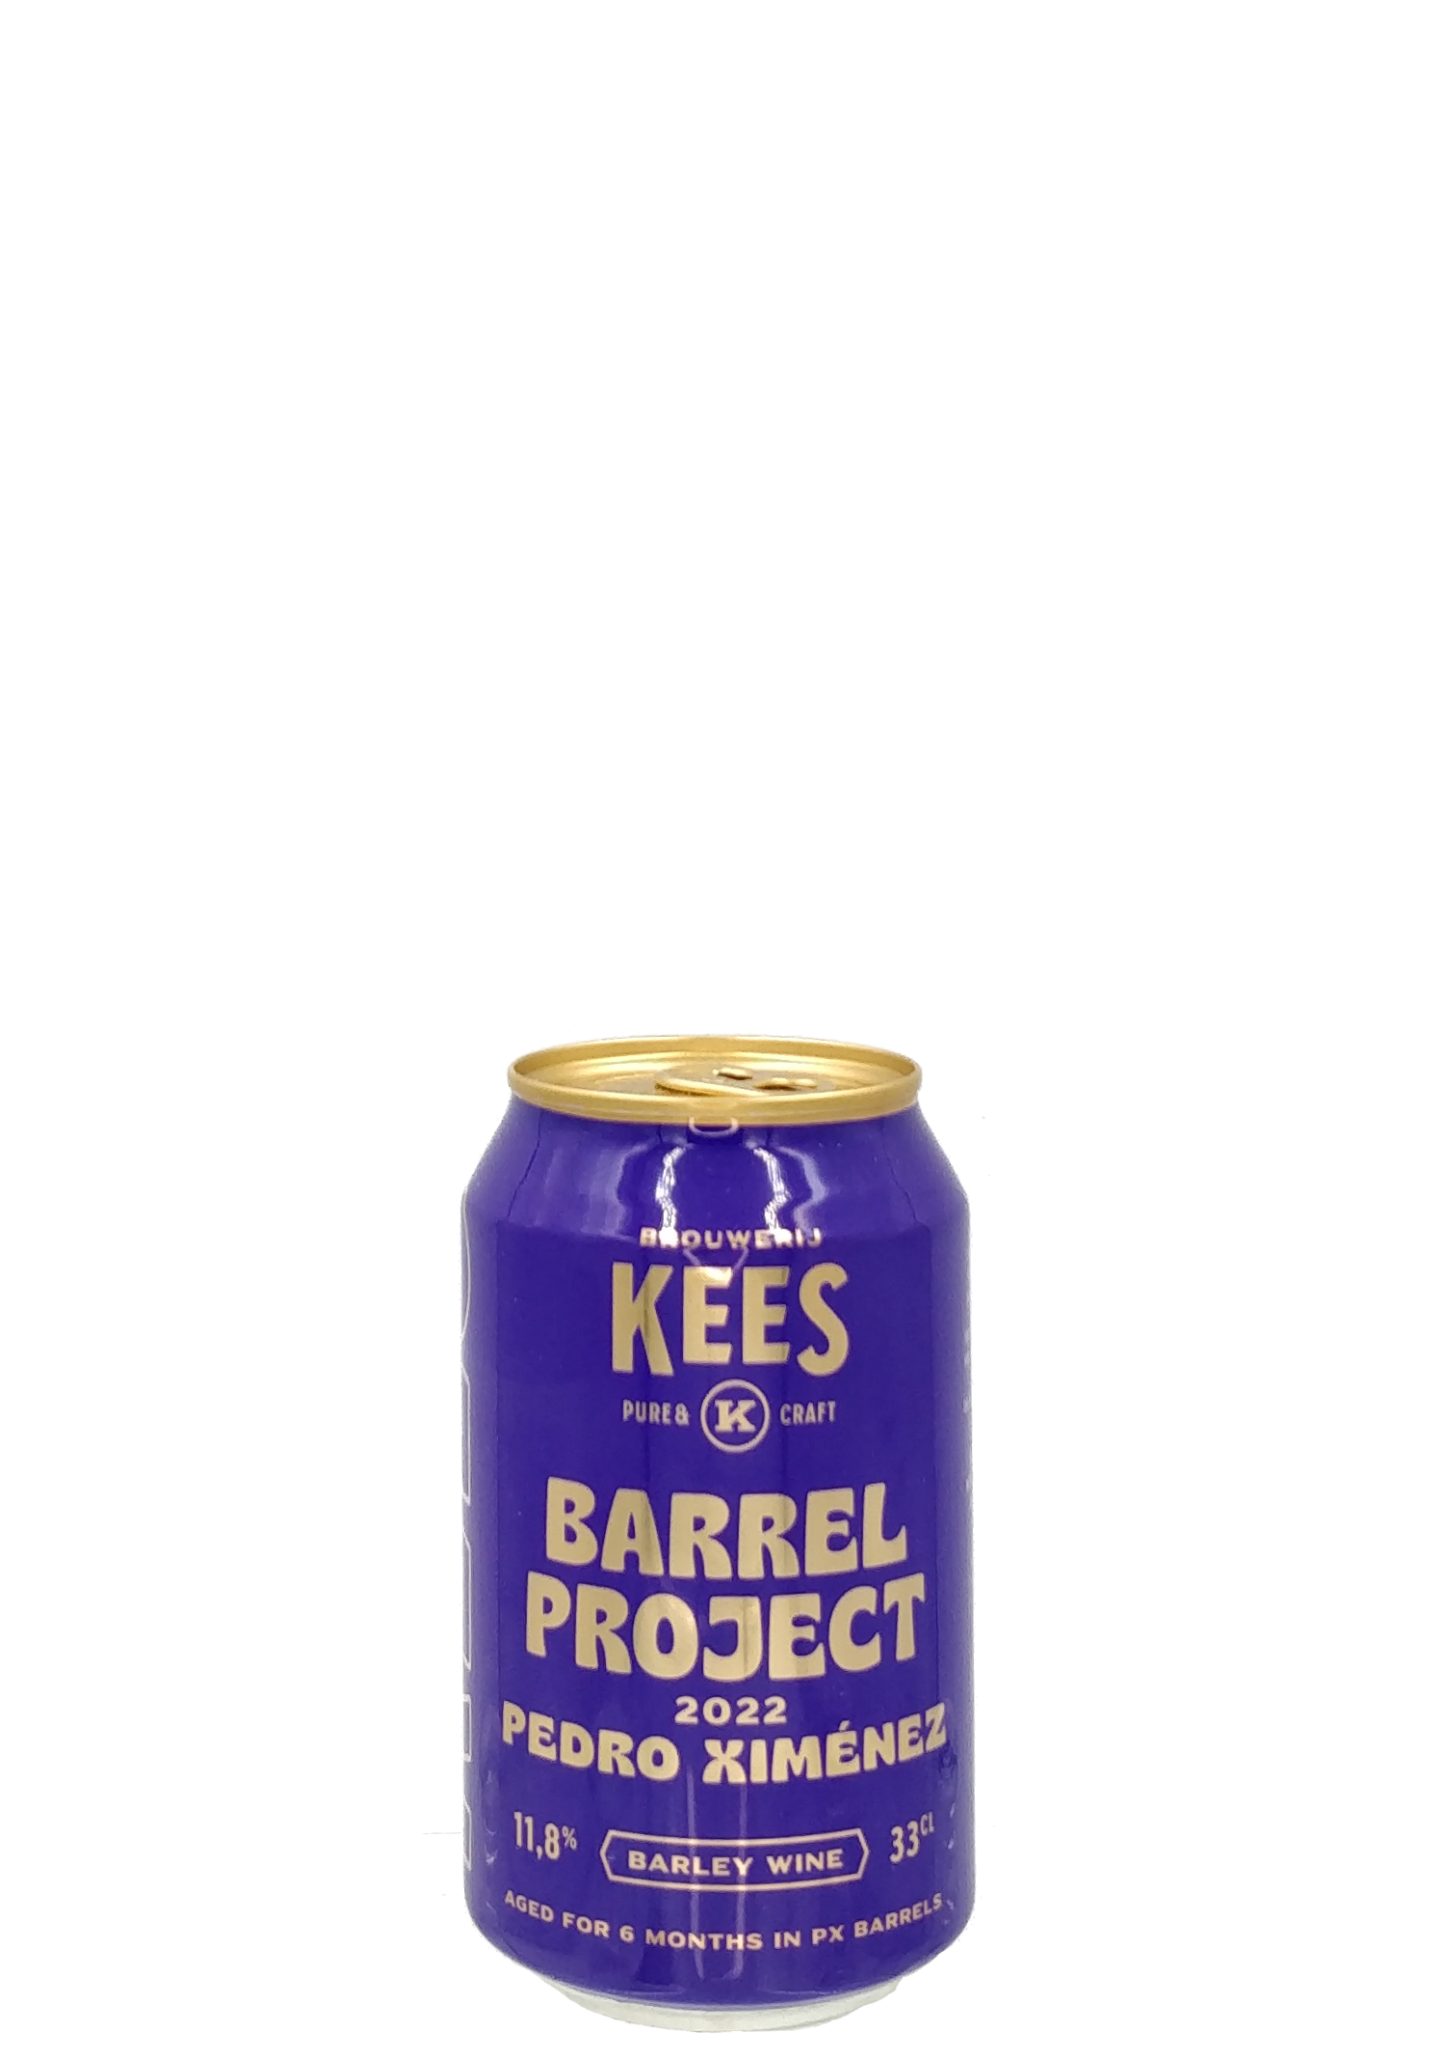 Barrel Project Pedro Ximénez 2022 11,8% 33cl